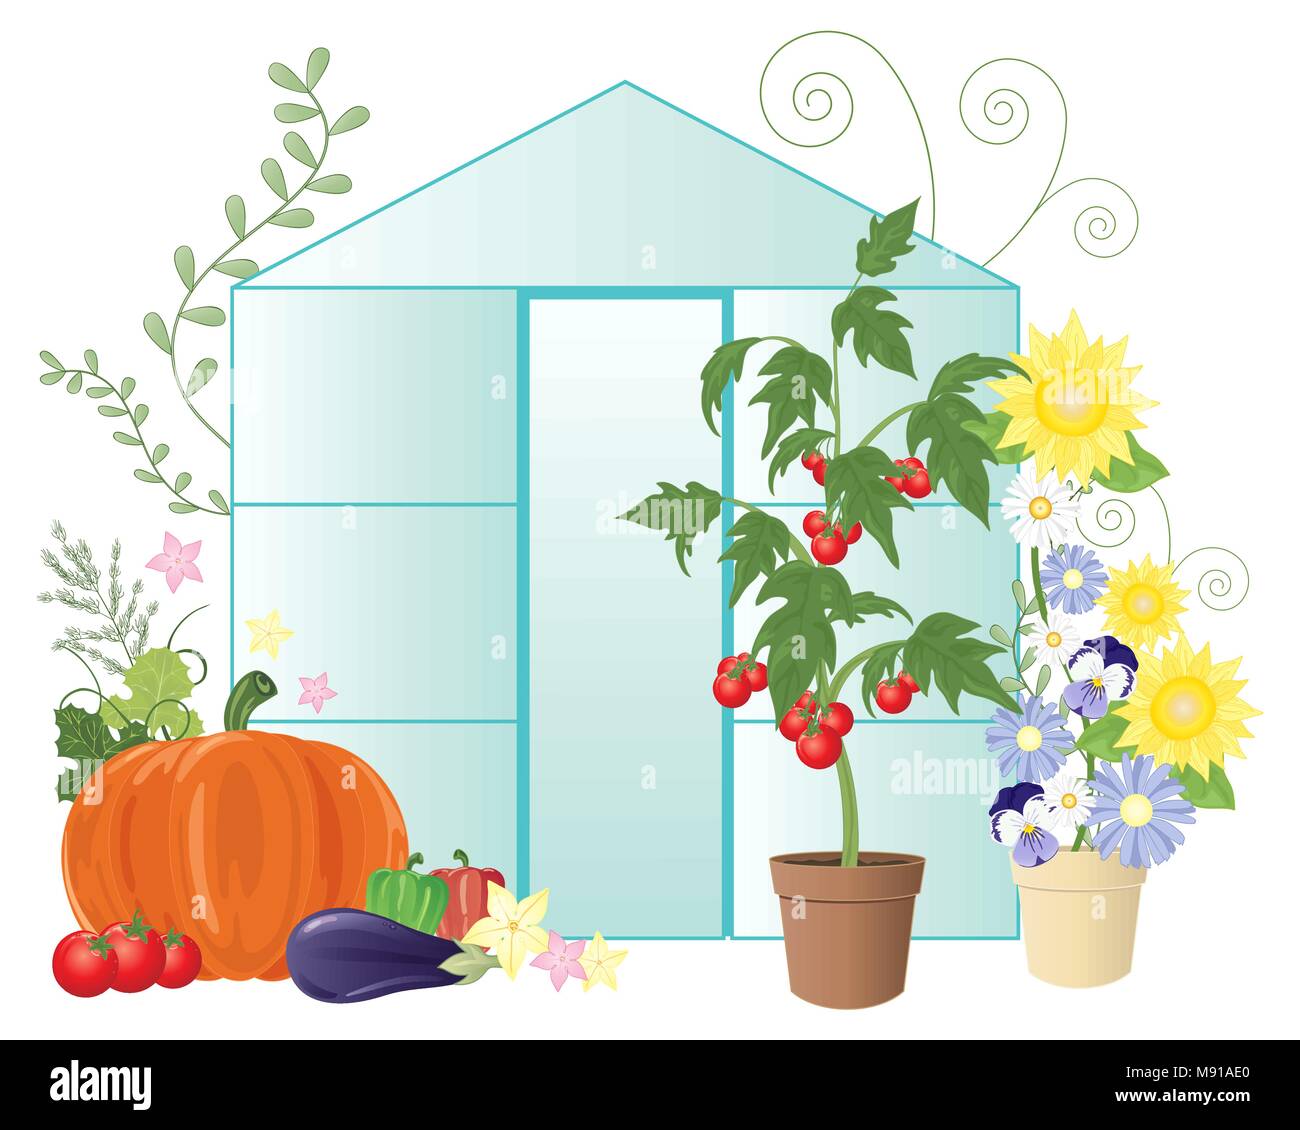 Un vecteur illustration en eps 10 format d'une serre d'été avec des fleurs et des légumes cultivés sur place y compris les tomates sur un fond blanc Illustration de Vecteur